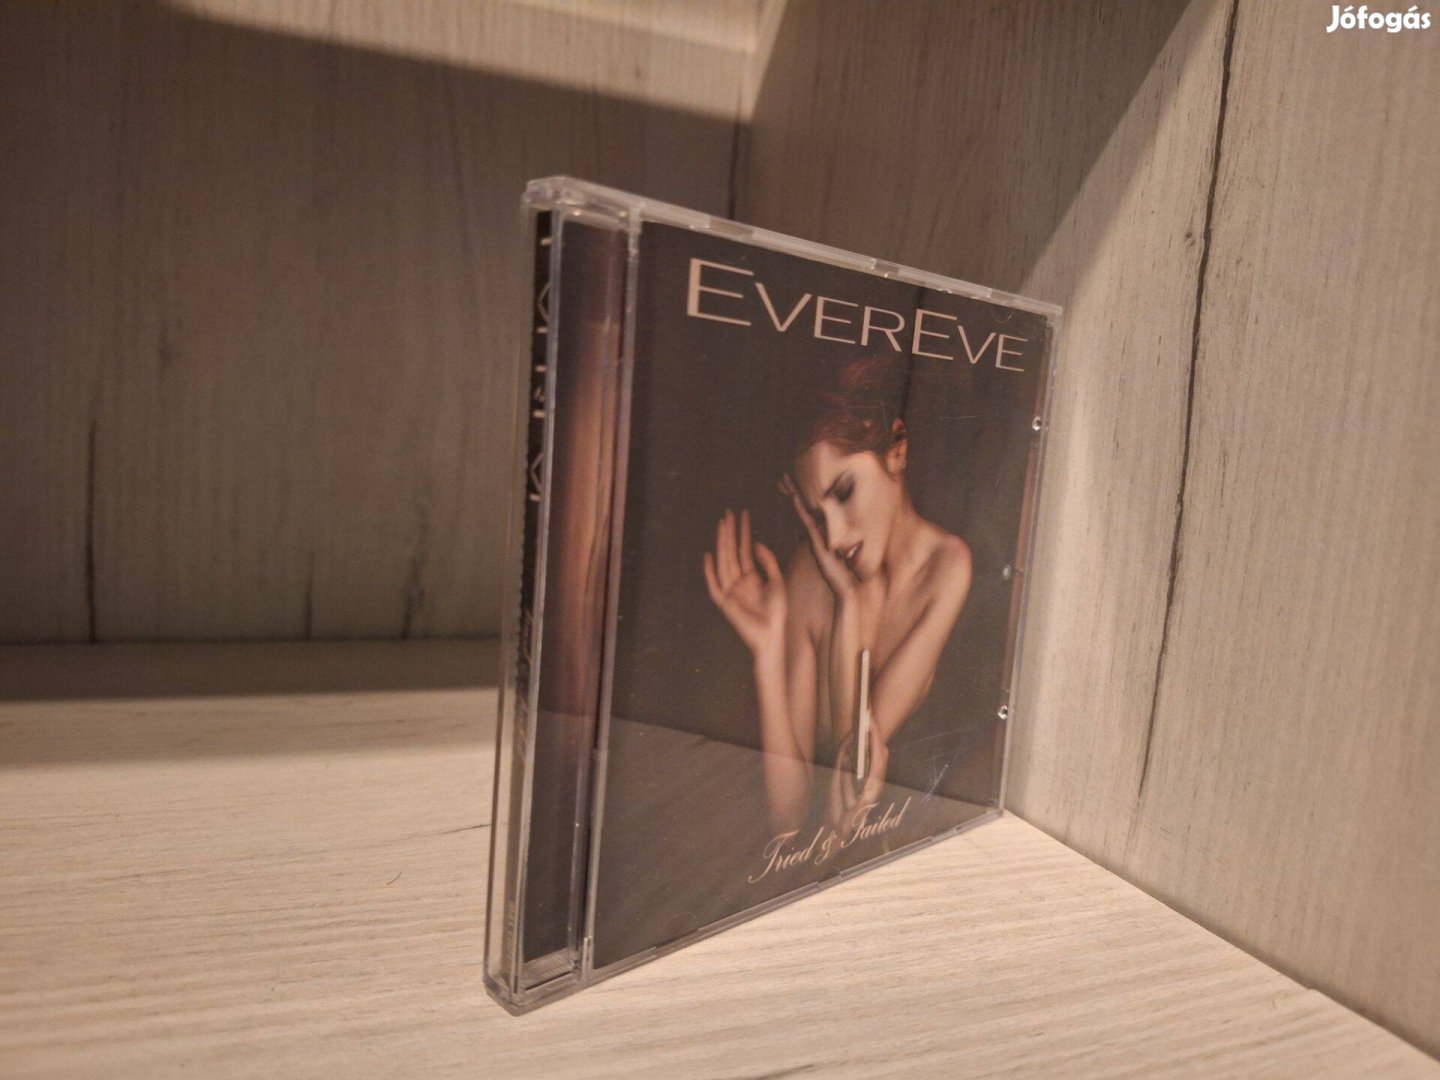 Evereve - Tried & Failed CD